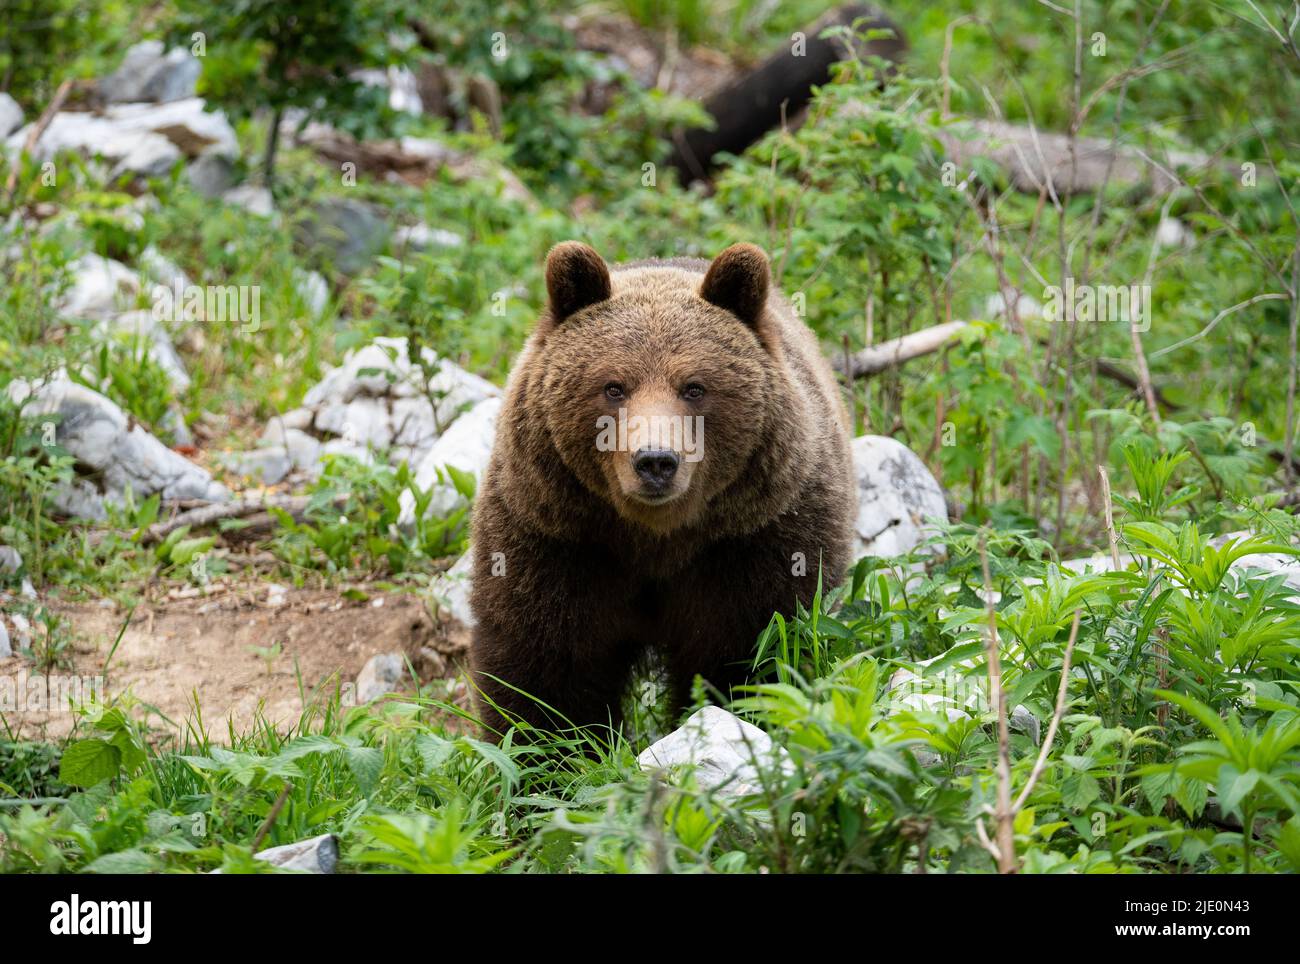 Orso bruno europeo nella regione di confine tra slovenia e croazia Foto Stock